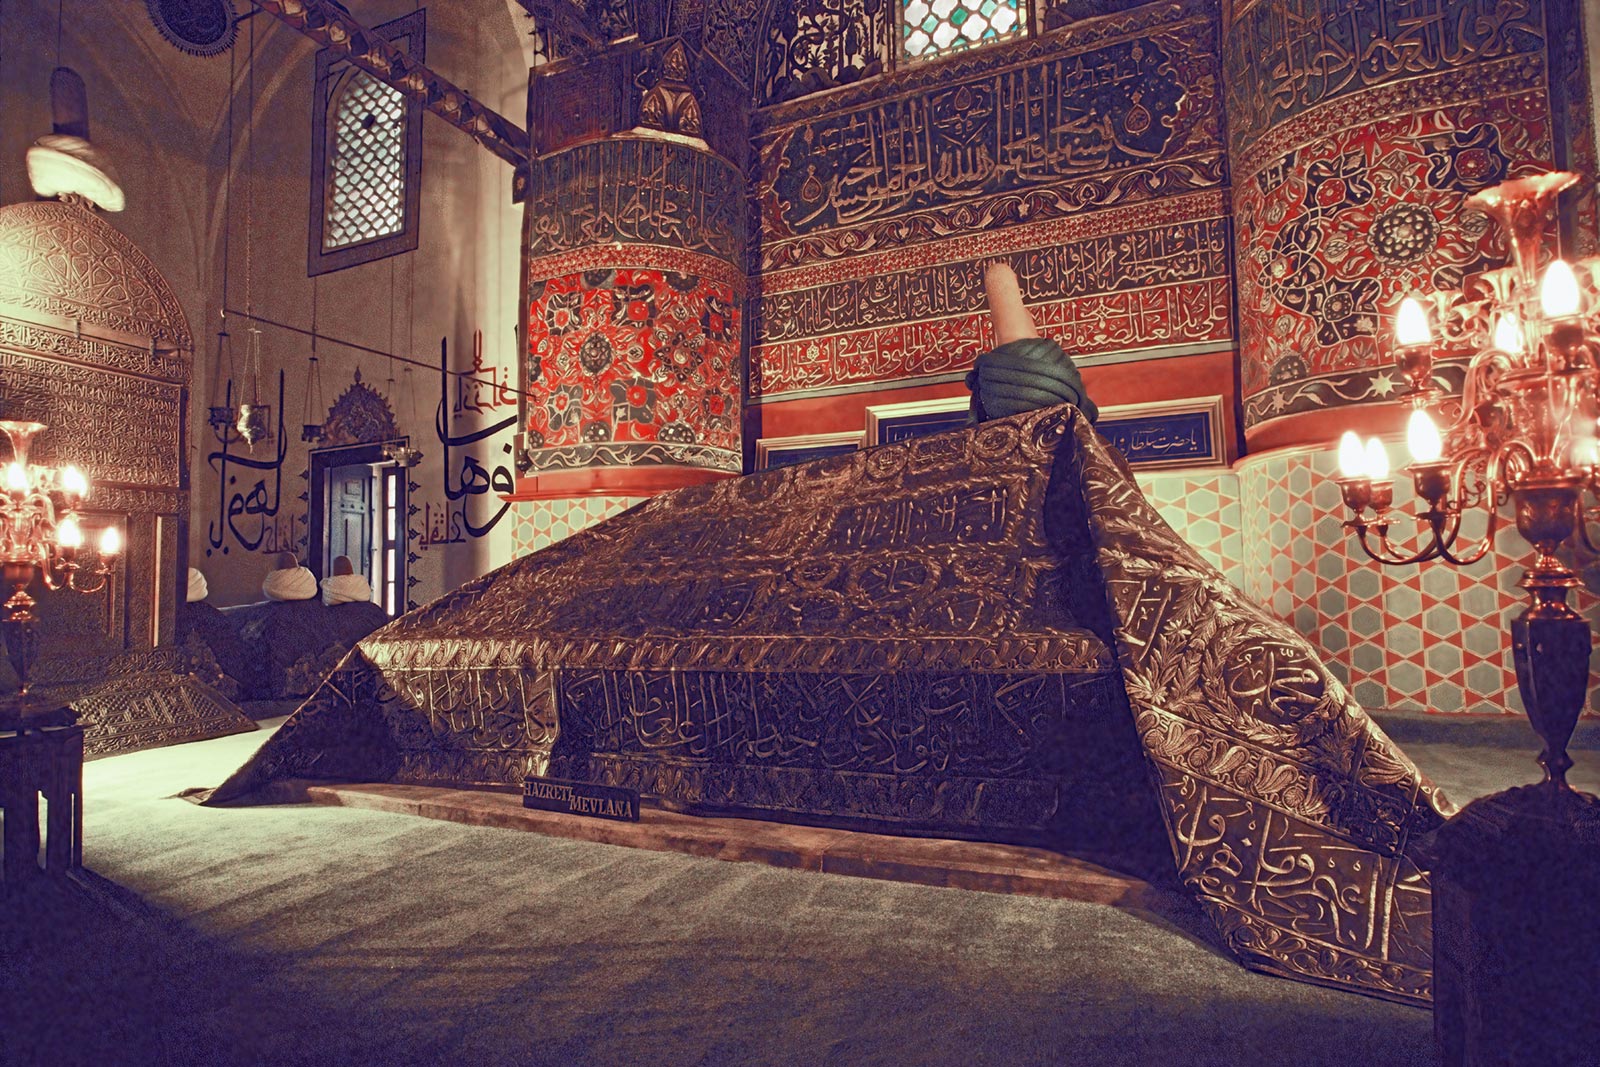 Tomb of Rumi, Konya